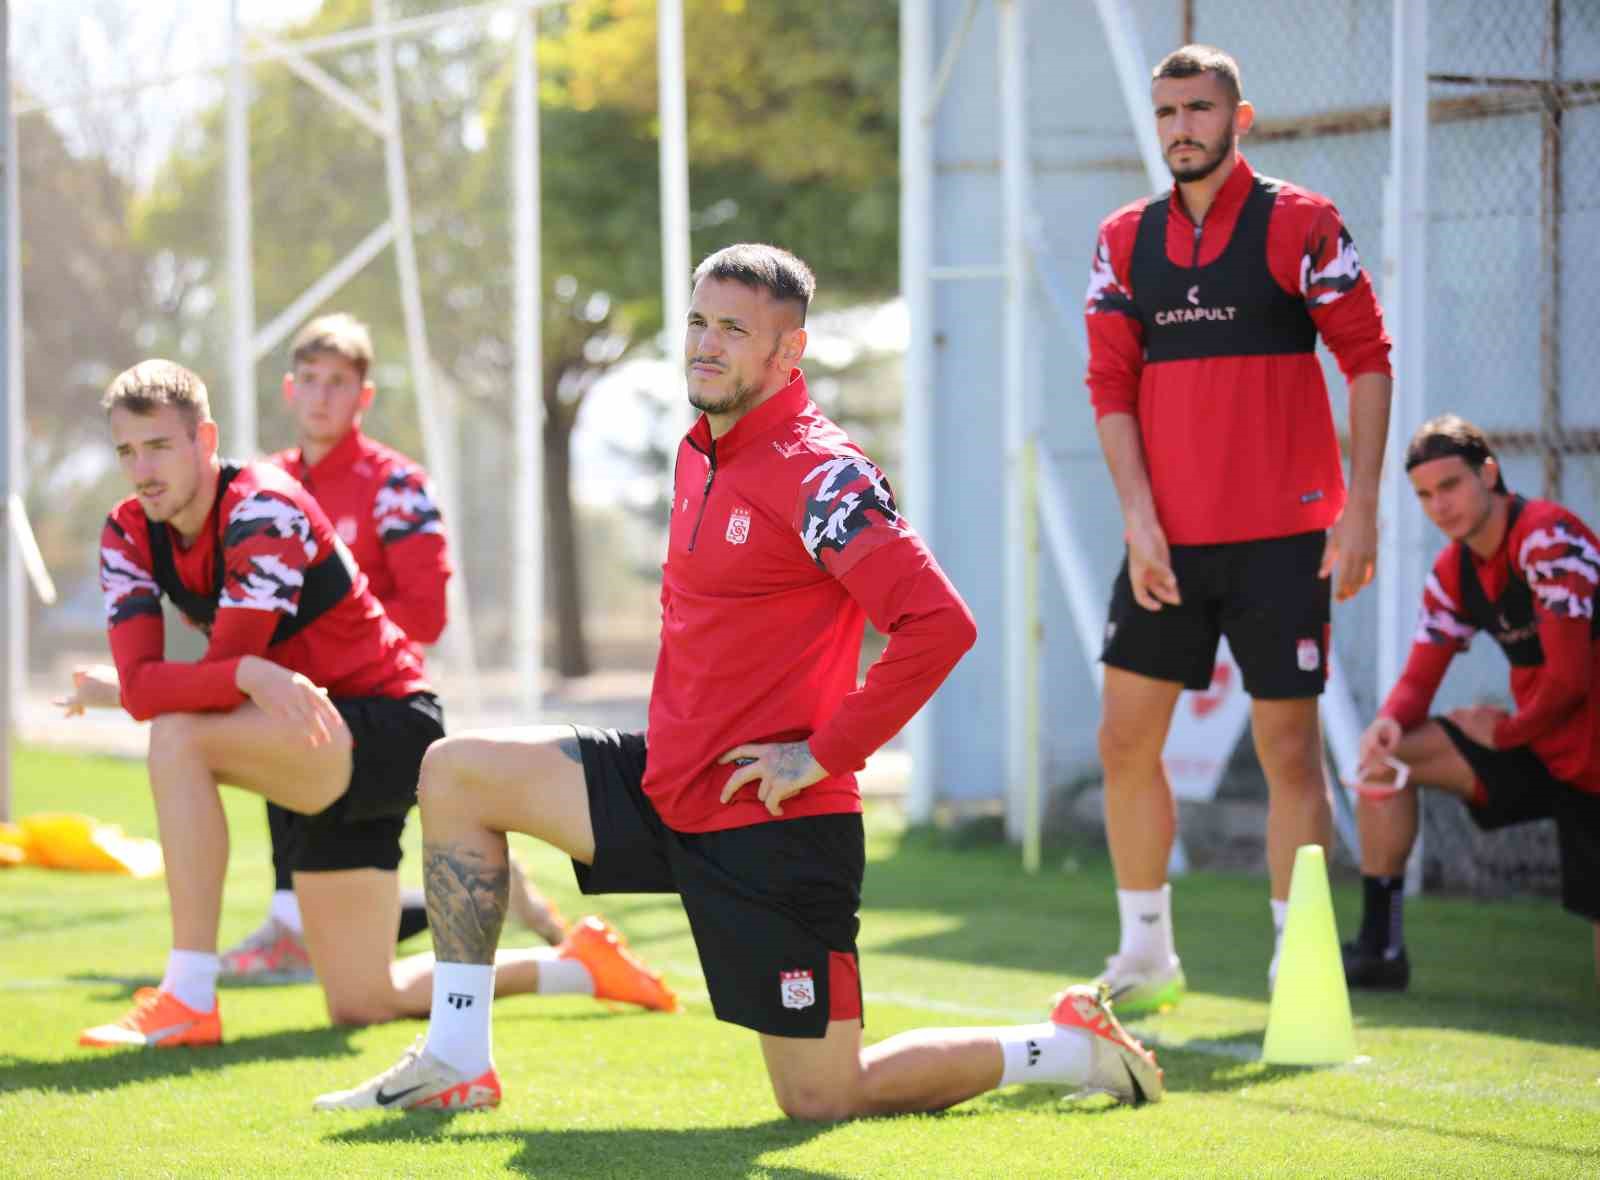 Sivasspor’da futbolculara gözü kapalı antrenman